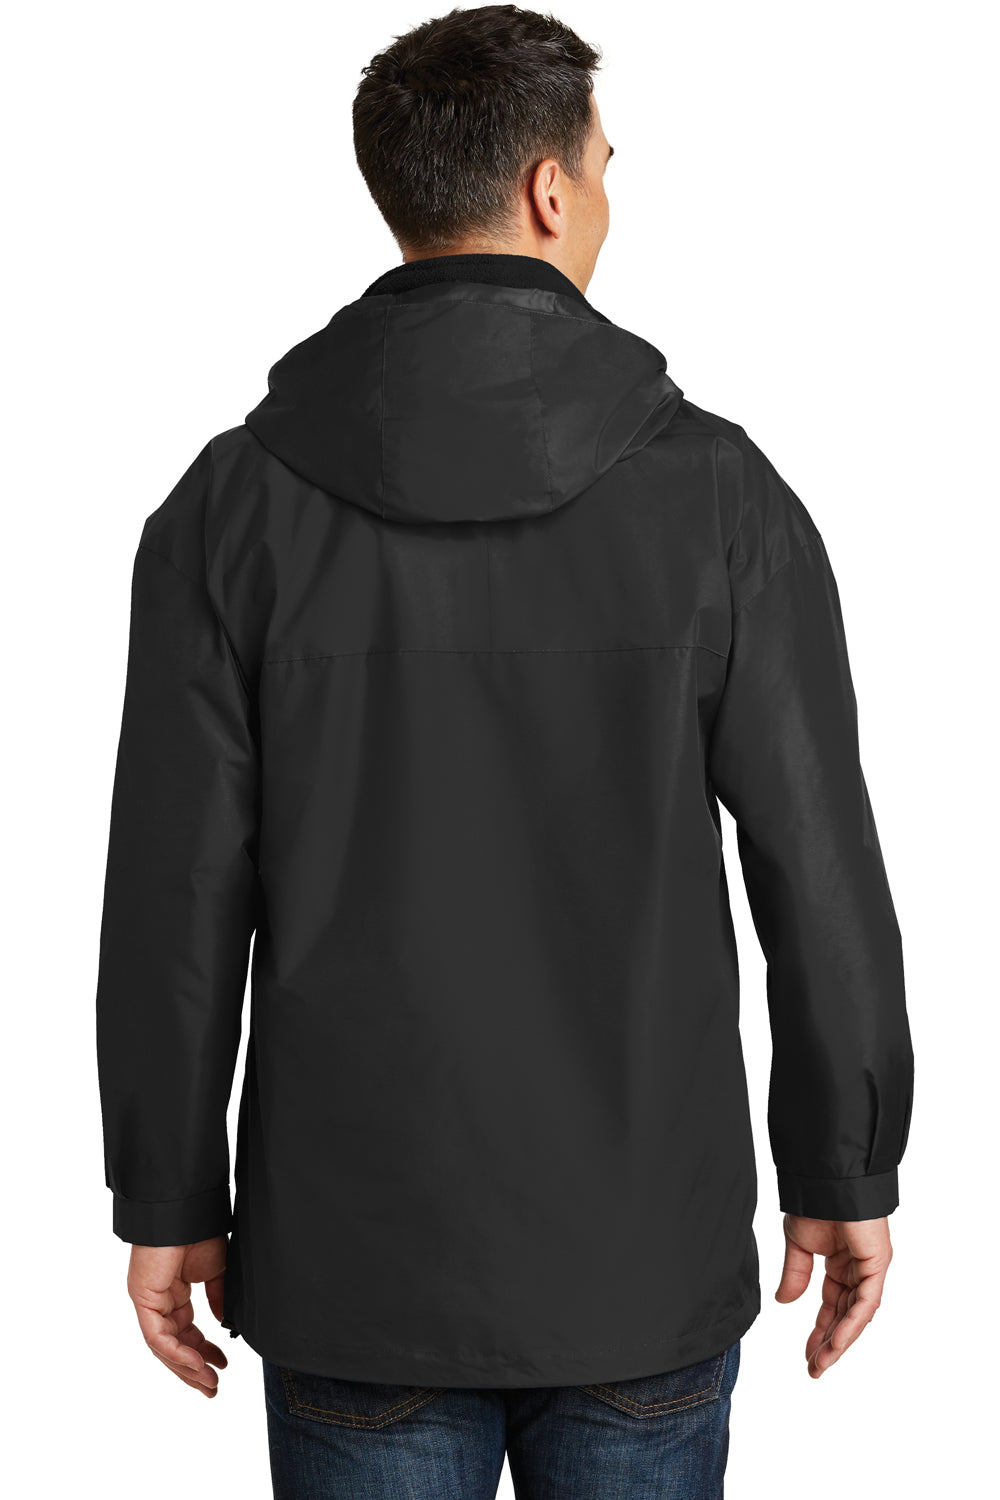 Port Authority J777 Mens 3-in-1 Wind & Water Resistant Full Zip Hooded Jacket Black Back